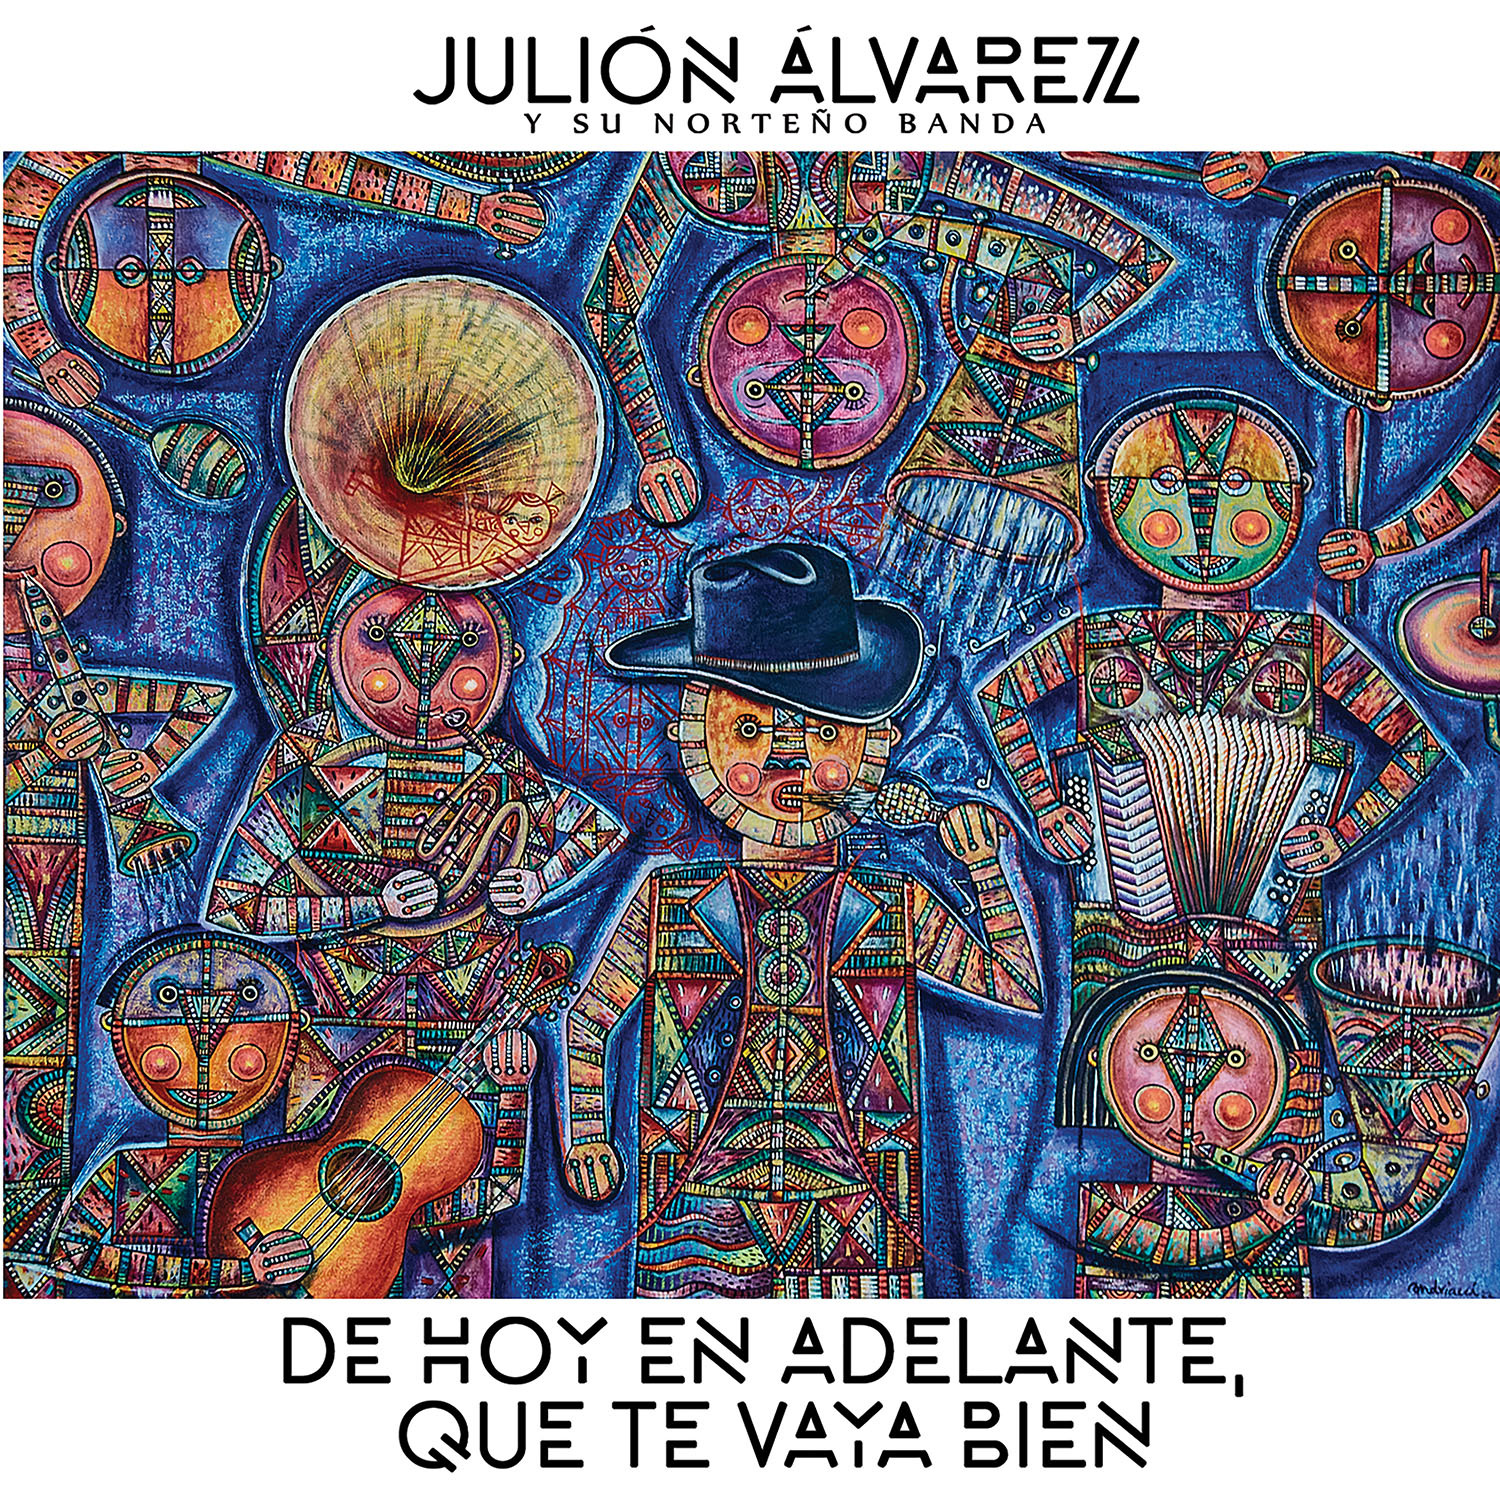 JULIÓN ÁLVAREZ y su Norteño lanzan nuevo disco “DE HOY EN ADELANTE, QUE TE VAYA BIEN”